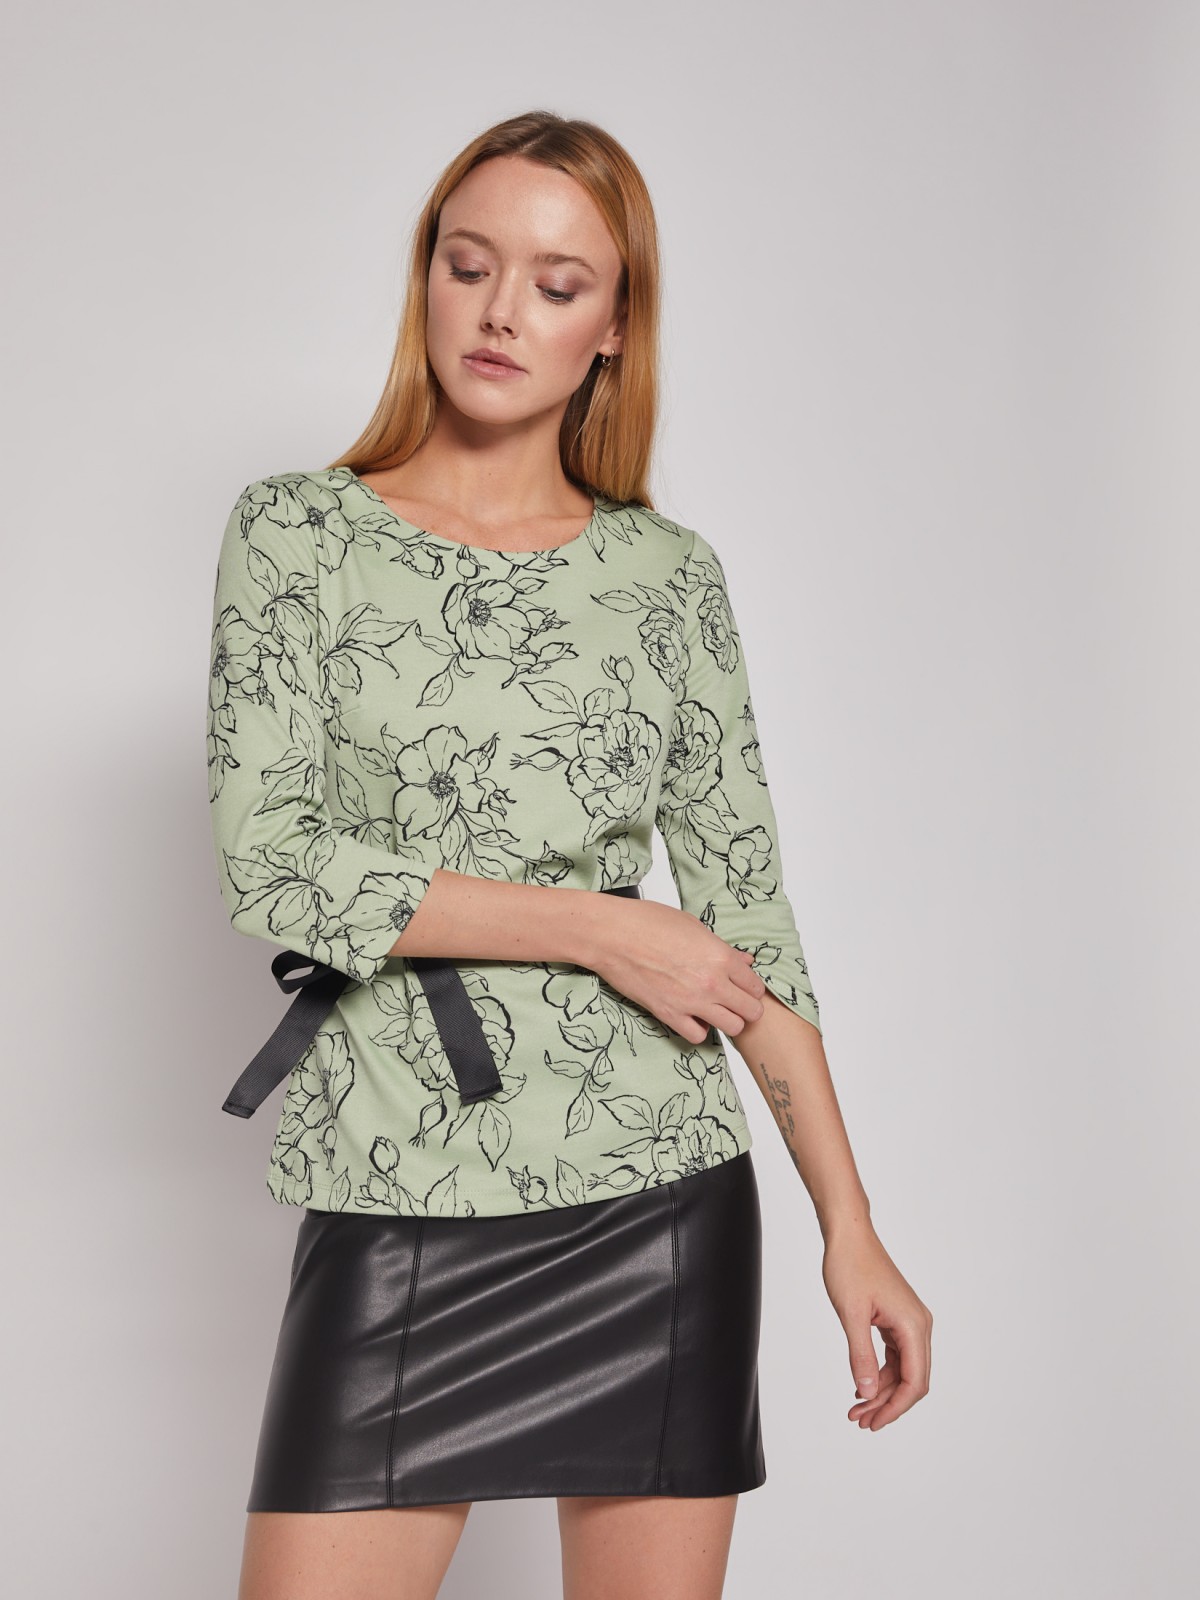 Трикотажная блузка с поясом zolla 022113110013, цвет светло-зеленый, размер XS - фото 3